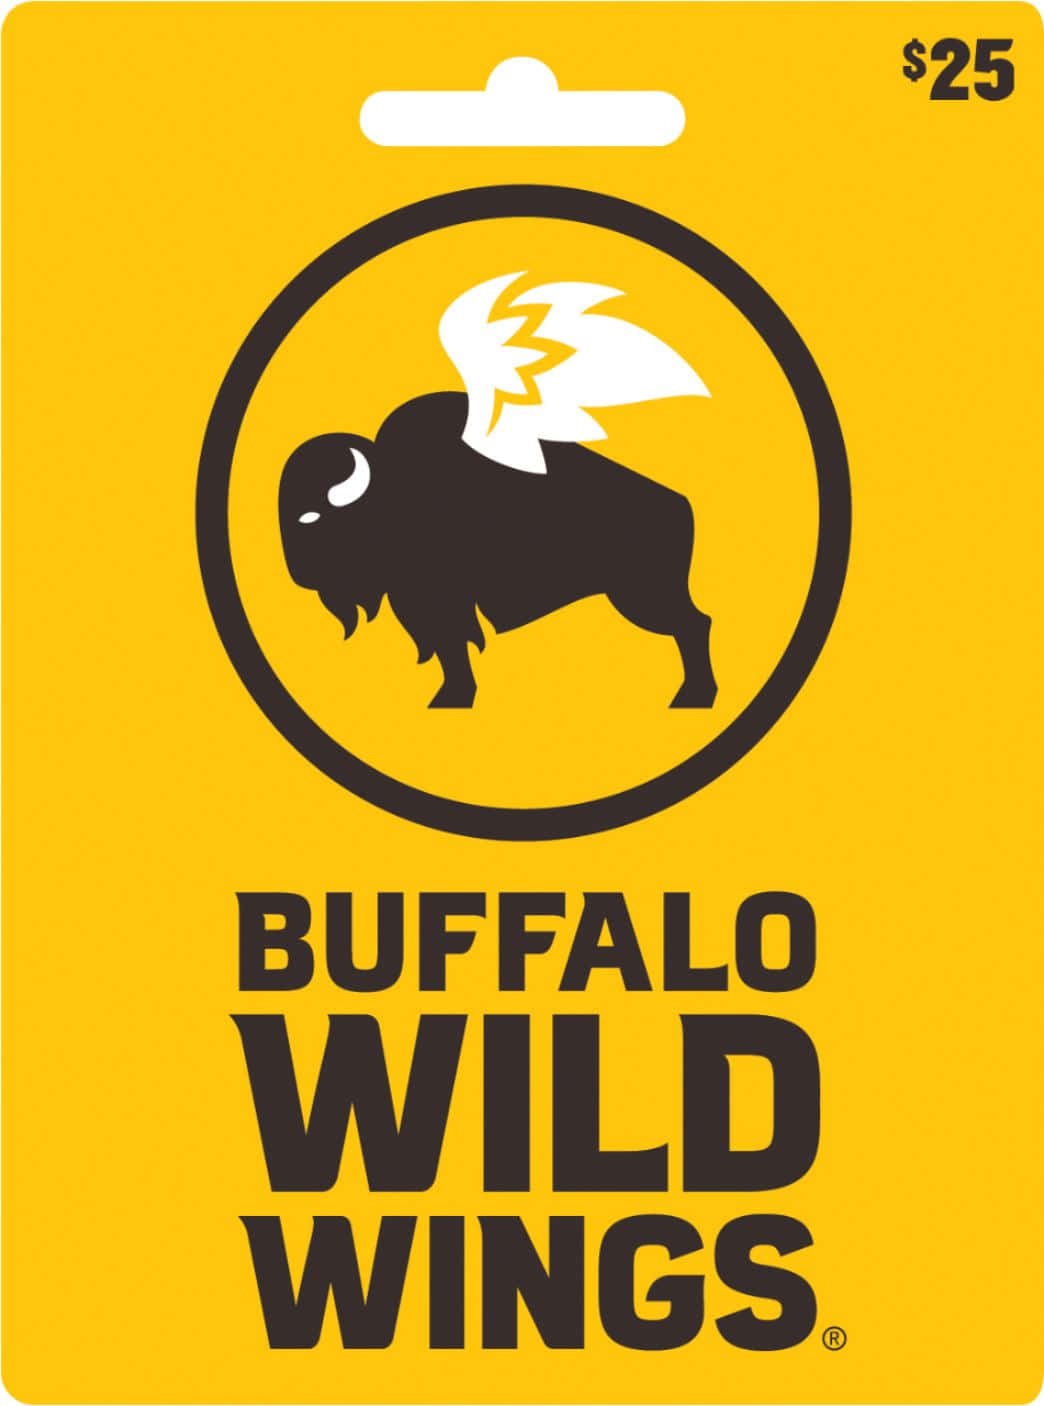 Gönnensie Sich Eine Köstliche Mahlzeit Bei Buffalo Wild Wings.